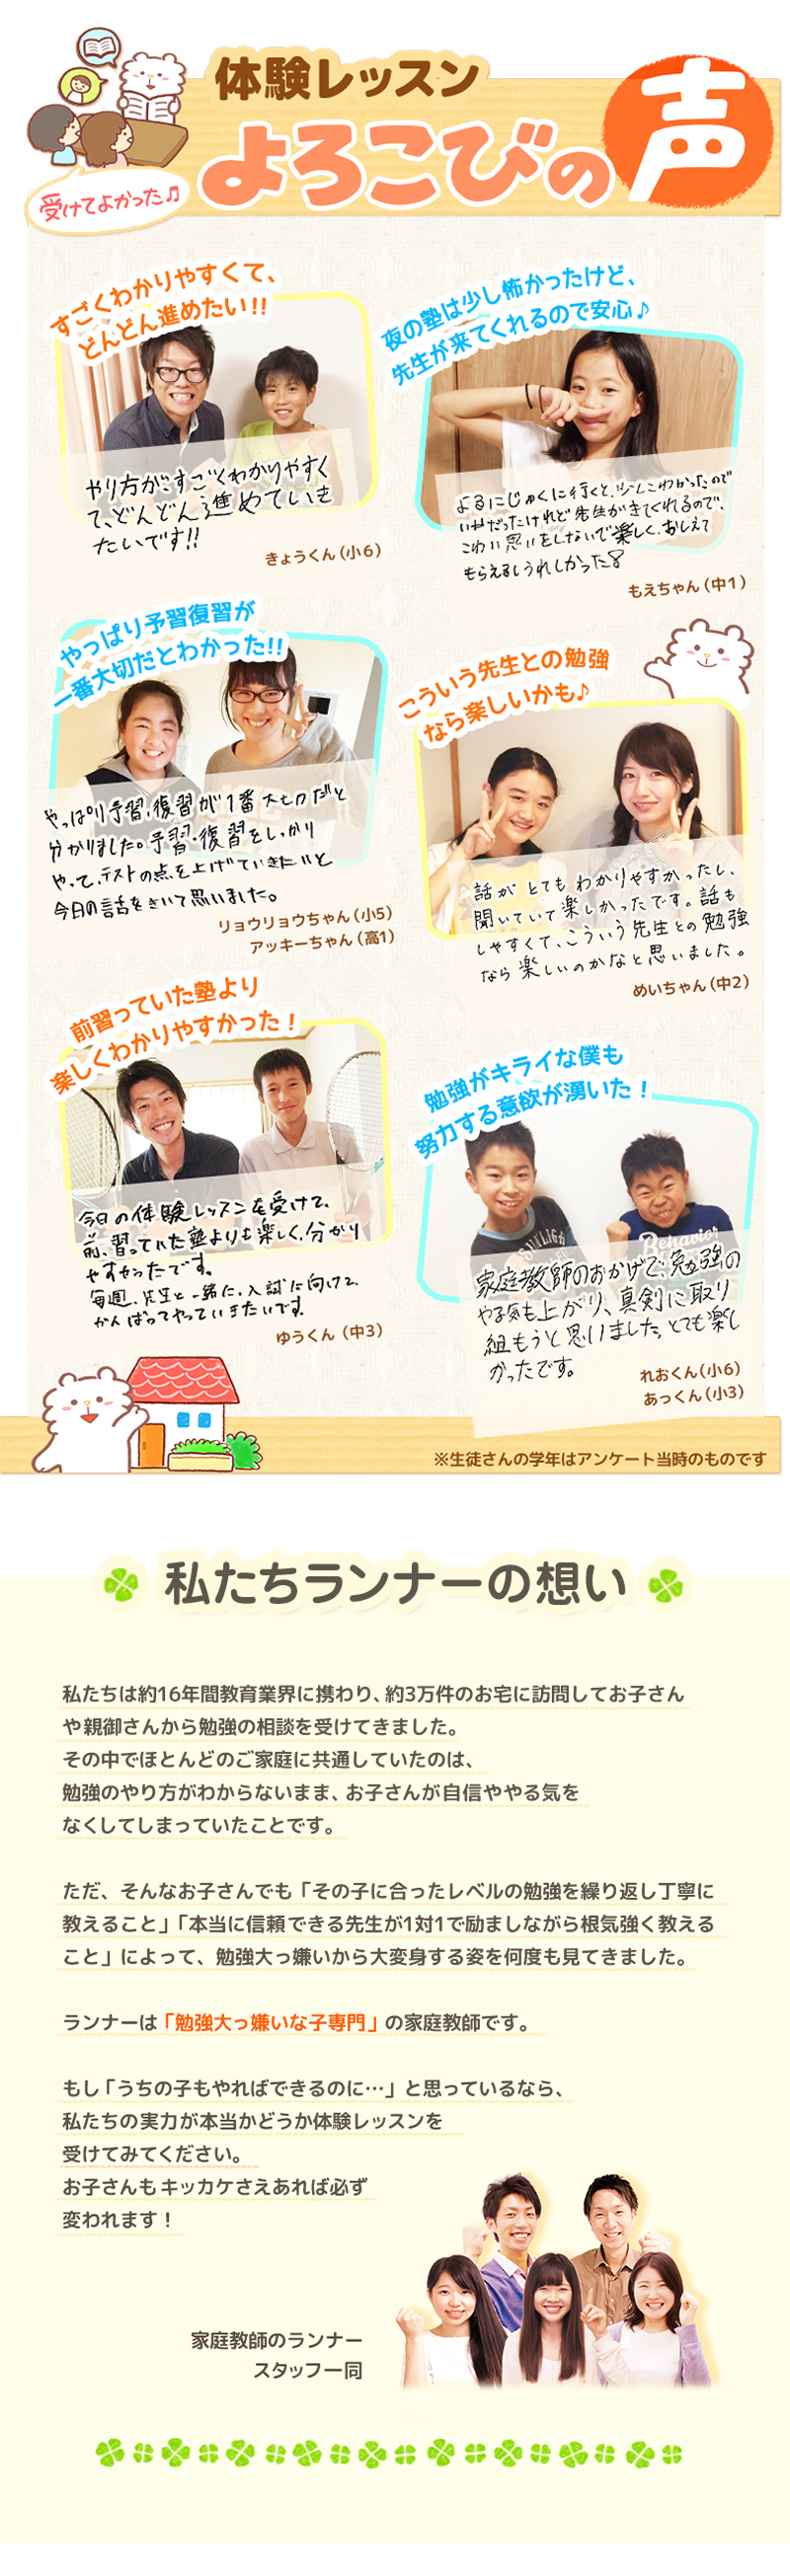 【家庭教師-茨城県-鹿嶋市のお客様のページ】【画像が表示されない場合はページ下部に画像と同じ内容をテキストで掲載していますのでそちらをご覧ください。】